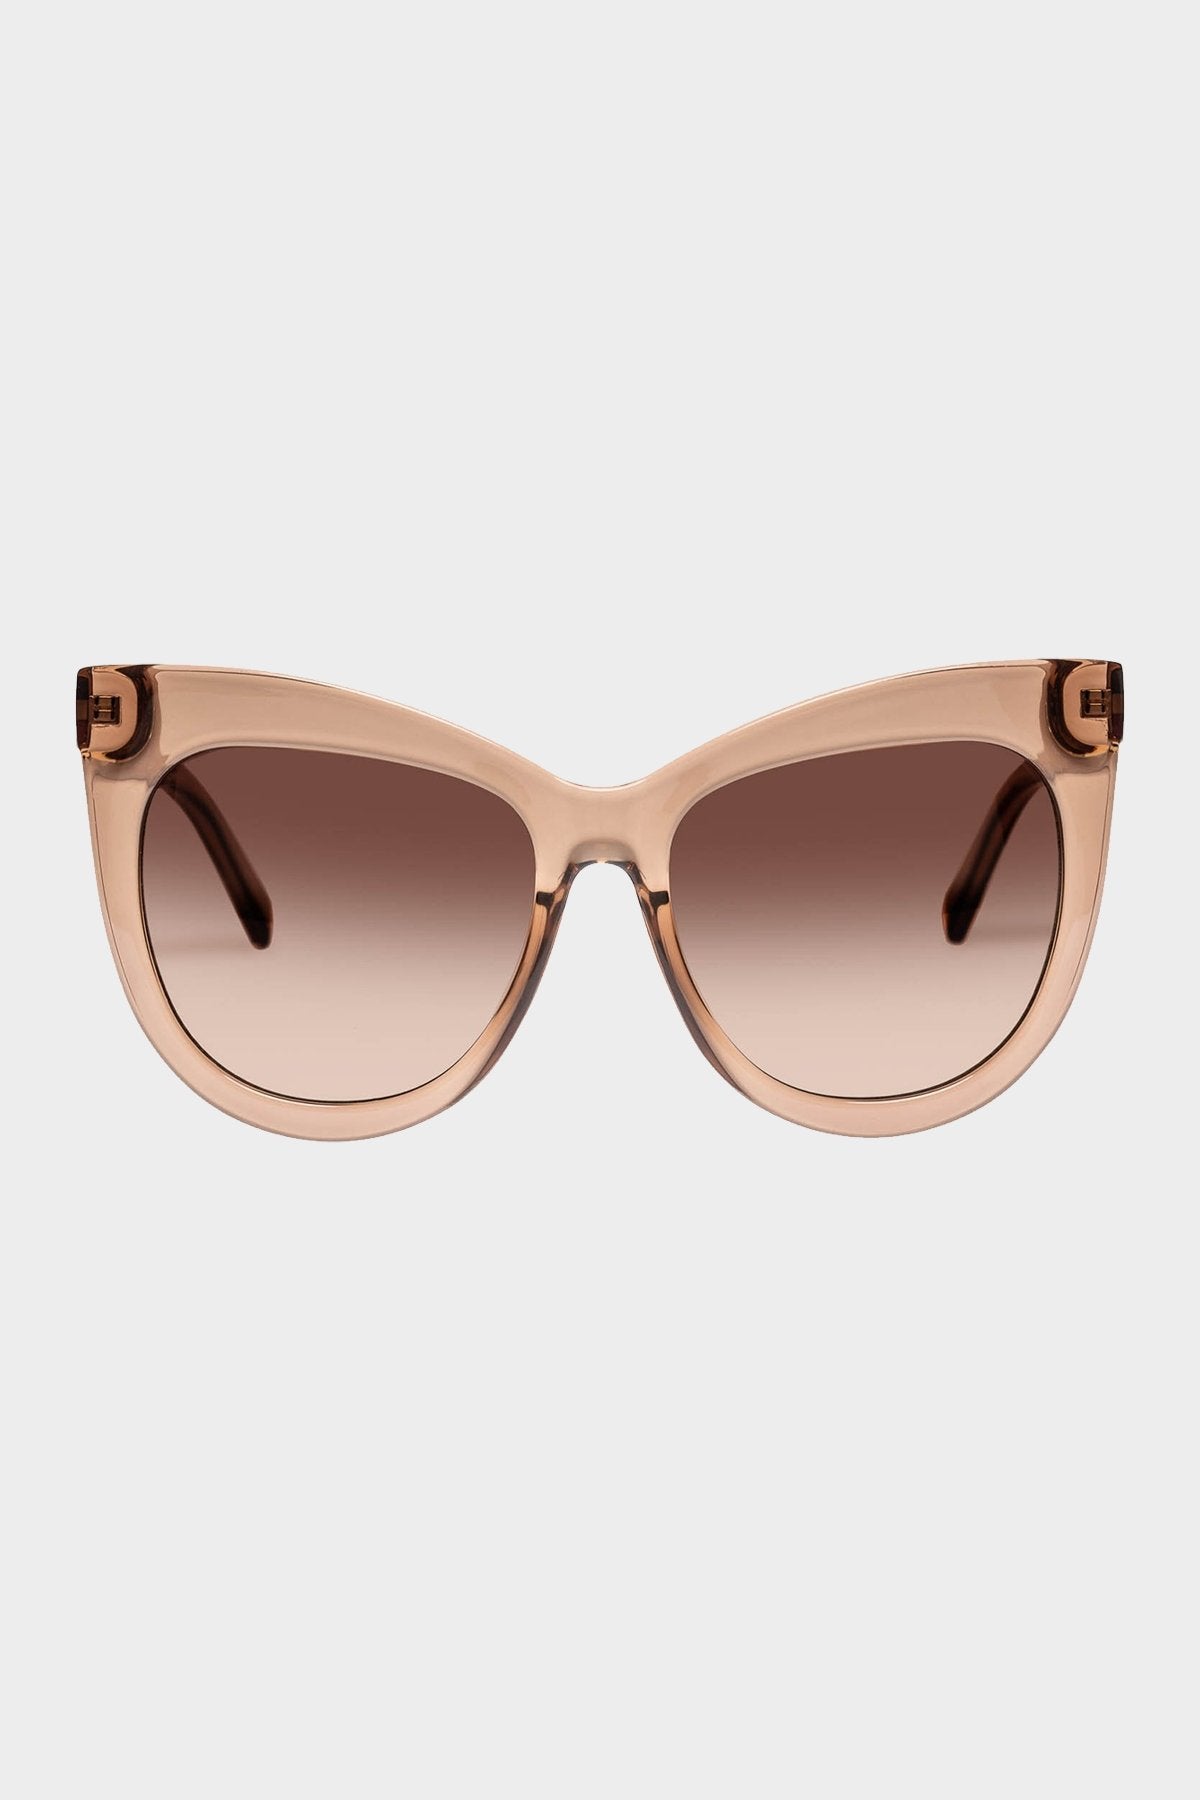 Hidden Treasure Sunglasses in Tan - shop-olivia.com